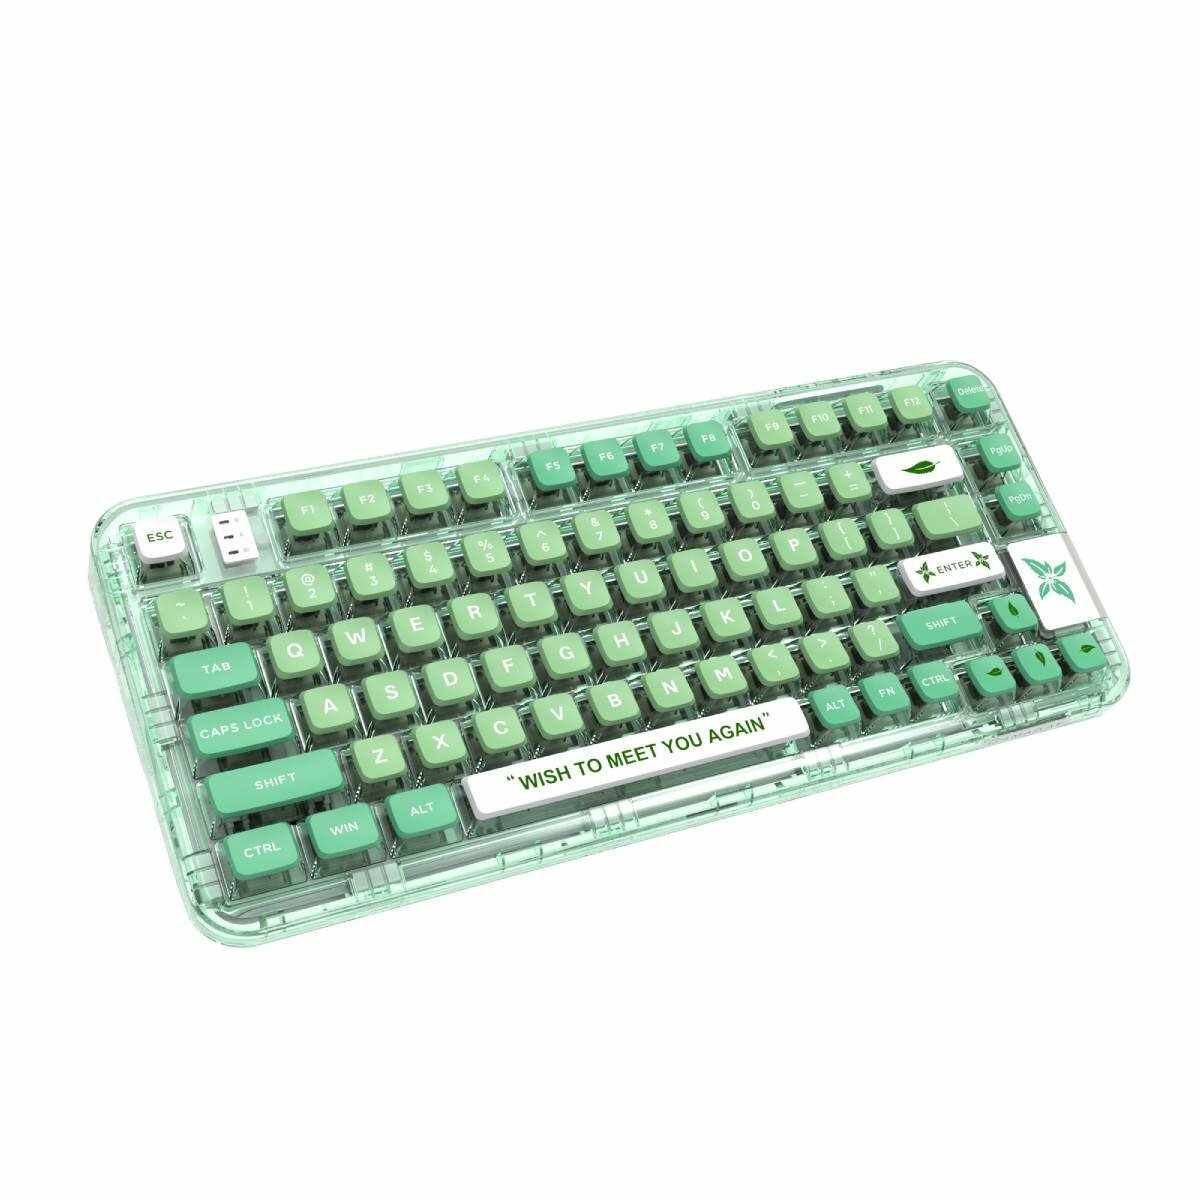 GAMAKAY GK75 Transparent Mechanical Keyboard Banggood Coupon Promo Code